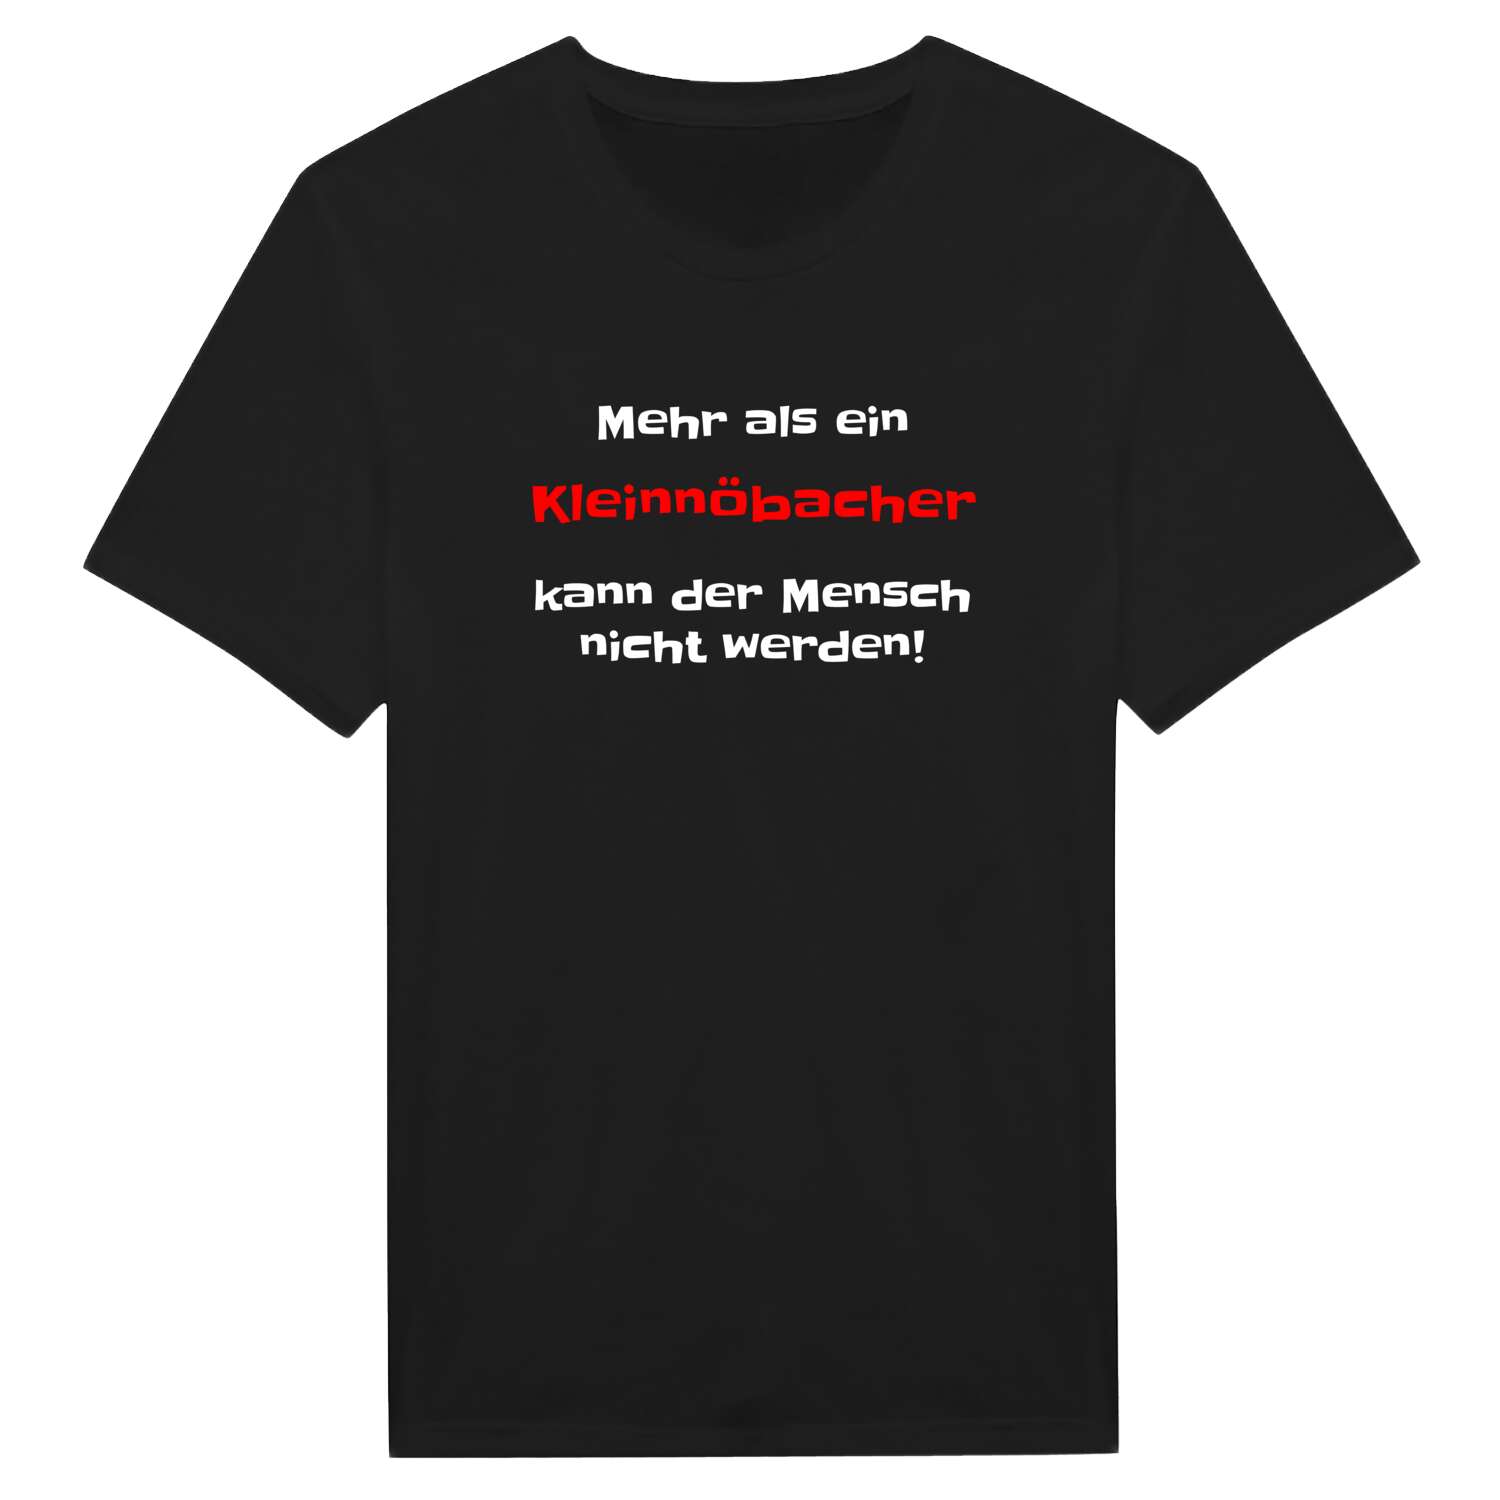 Kleinnöbach T-Shirt »Mehr als ein«